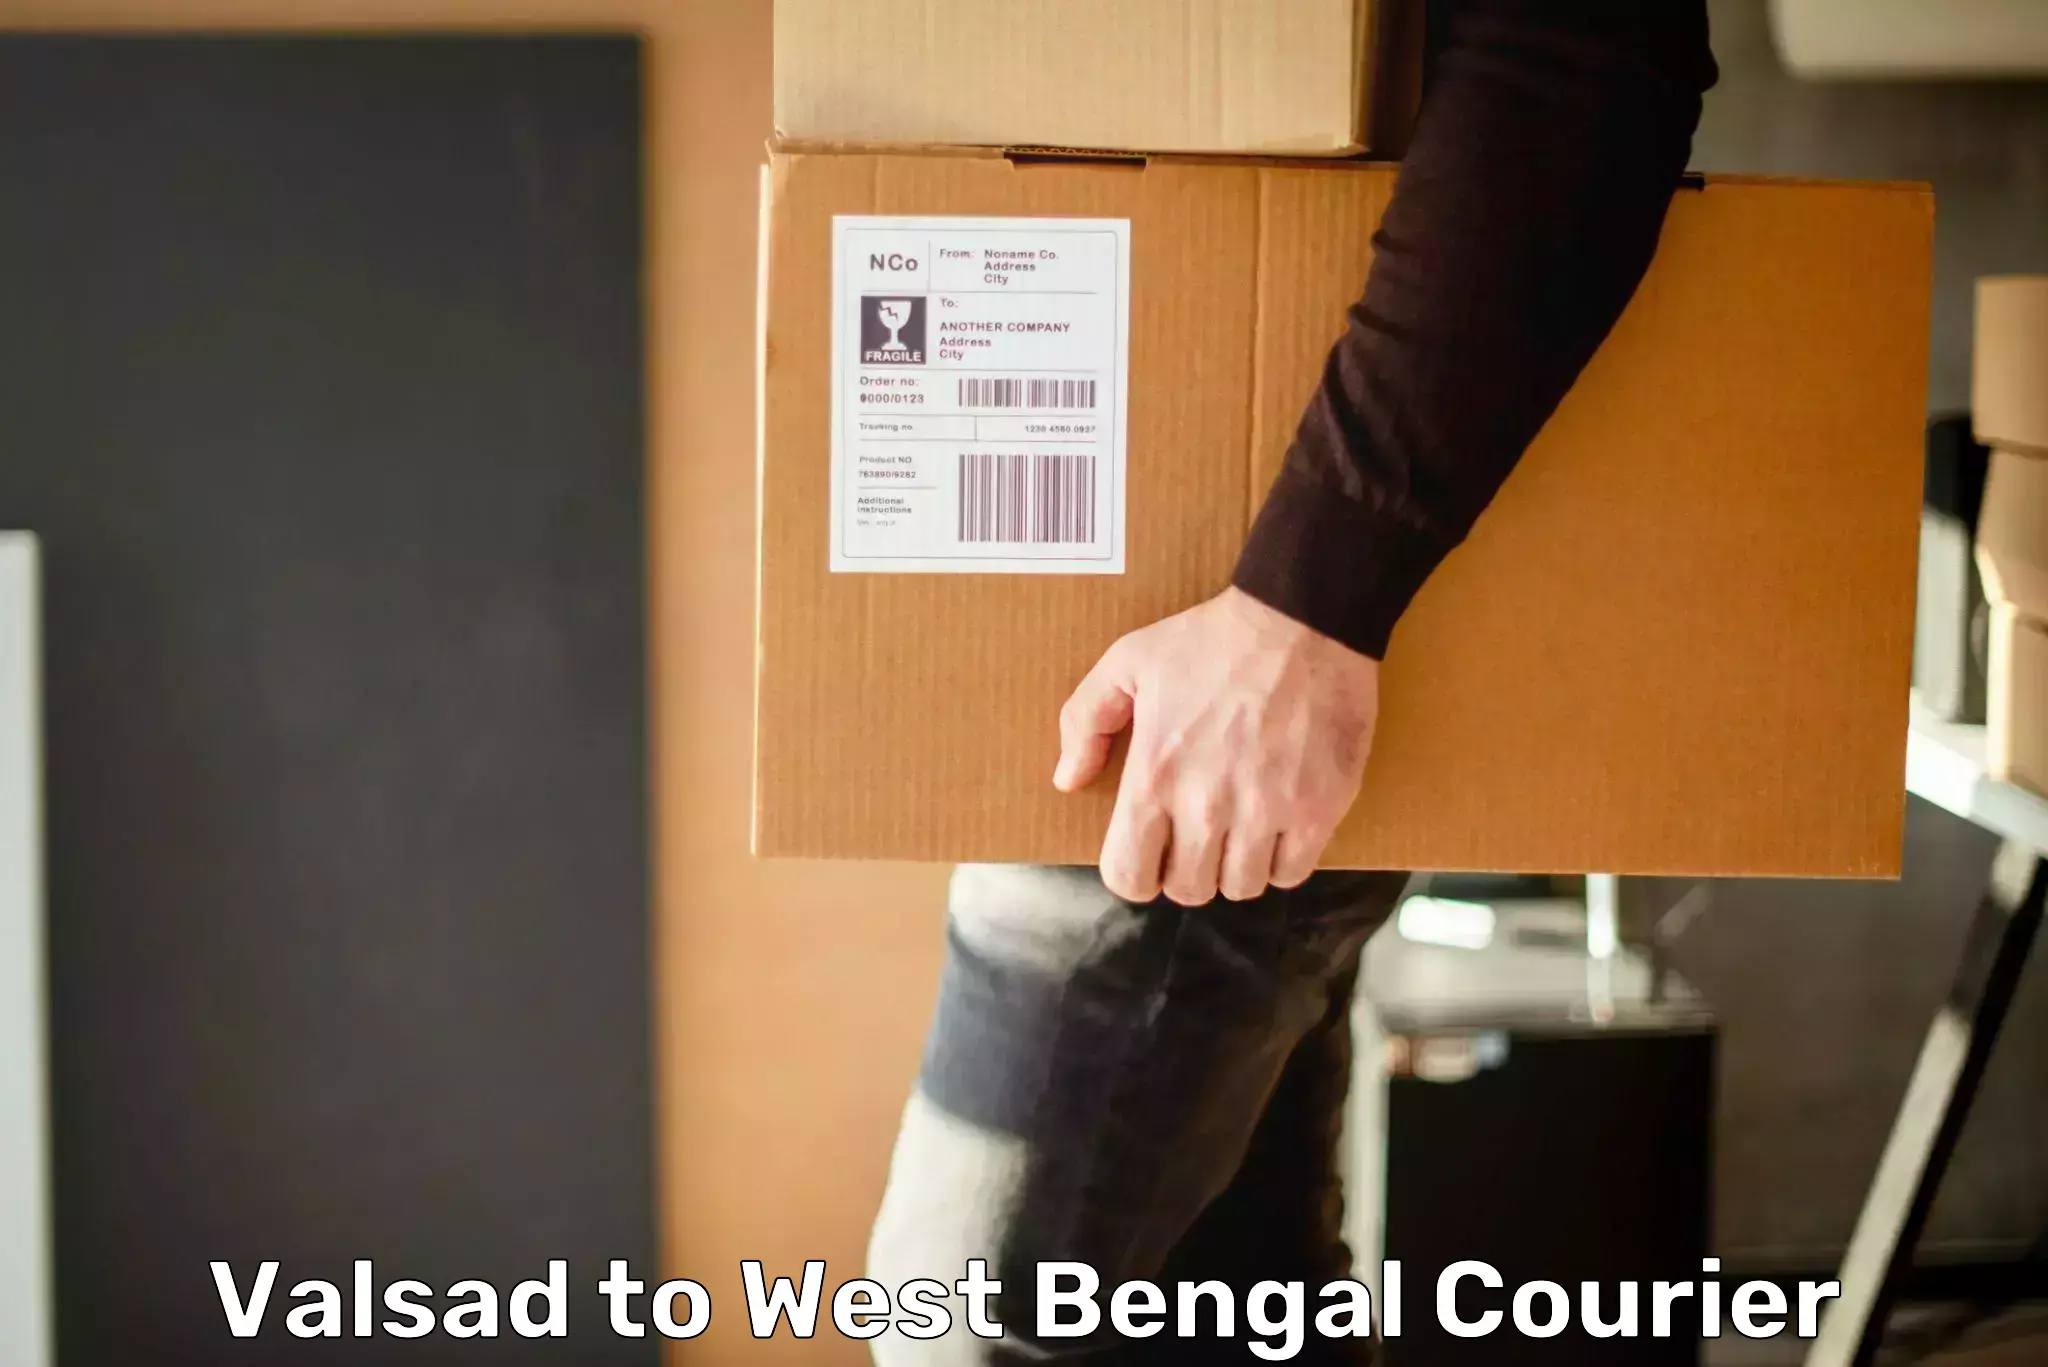 Package delivery network Valsad to Kolkata Port